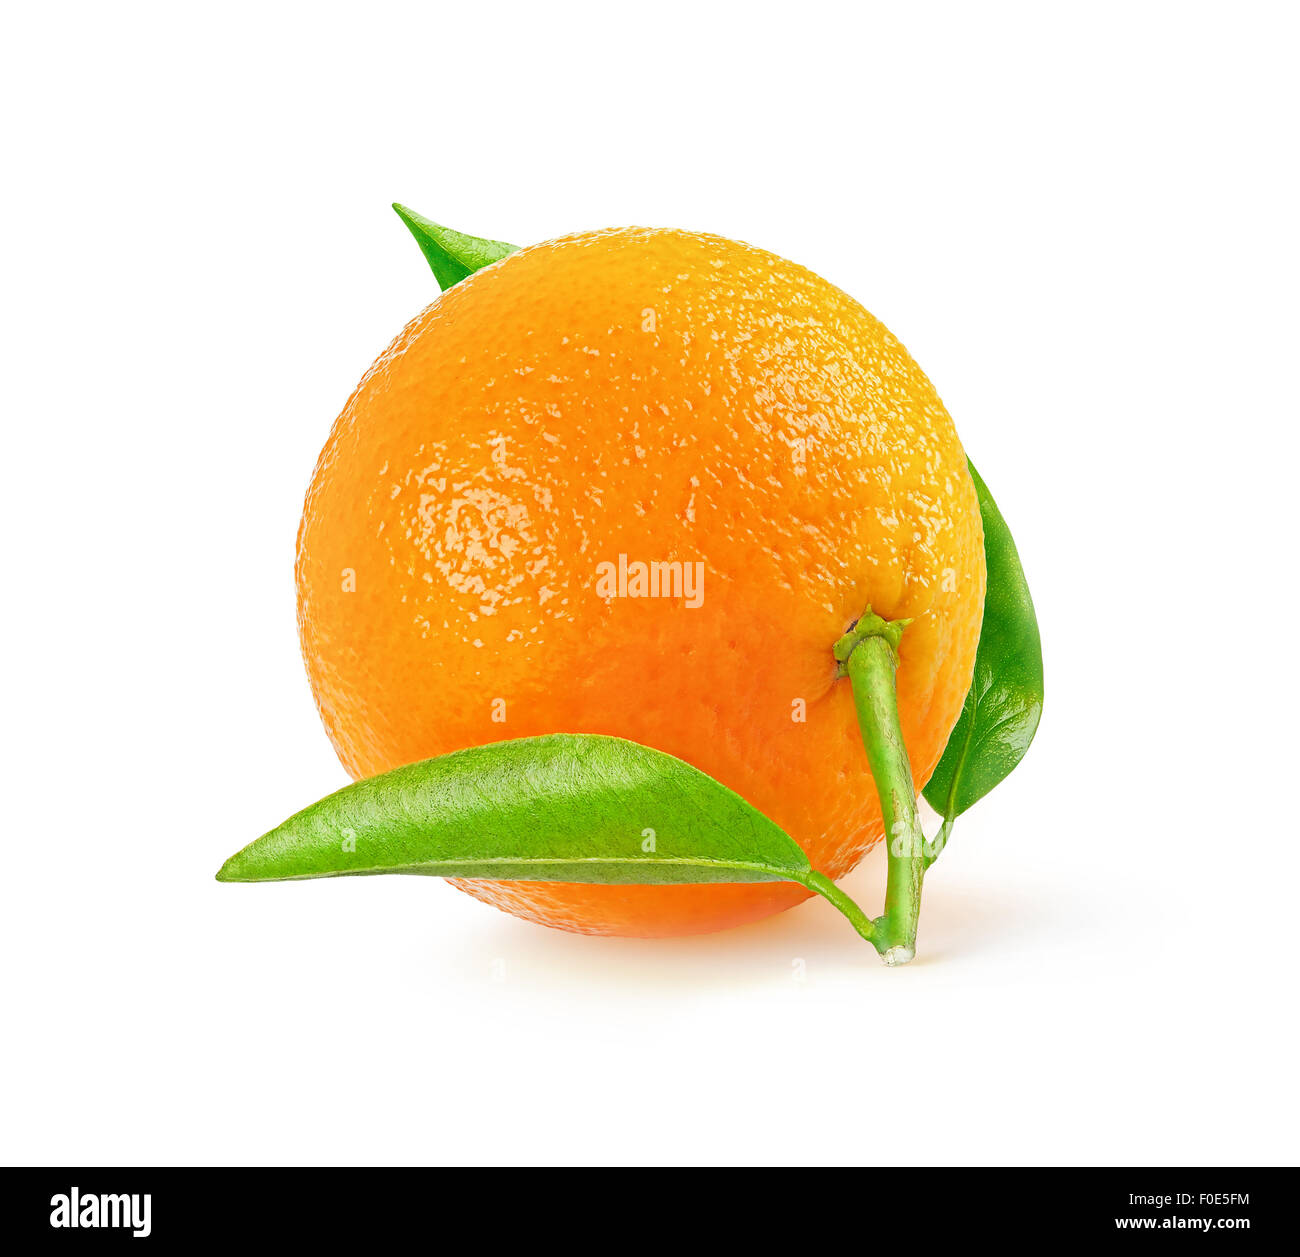 Un mandarino fresco isolato su sfondo bianco con tracciato di ritaglio Foto Stock